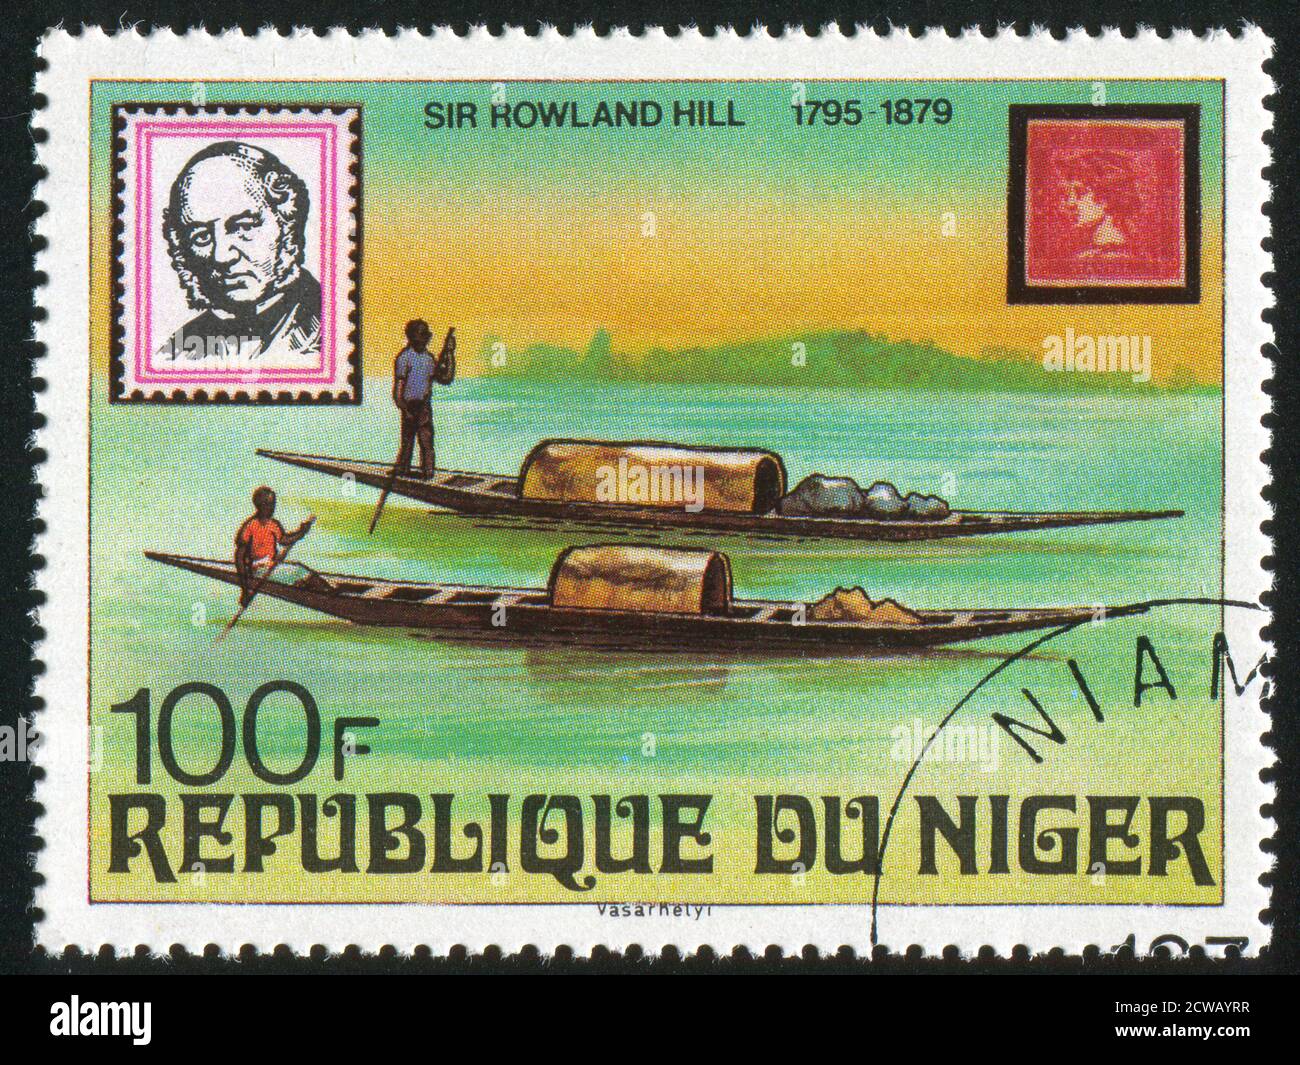 NIGER - UM 1979: Briefmarke gedruckt von Niger zeigt Rowland Hill, Kanus und Österreich, um 1979 Stockfoto